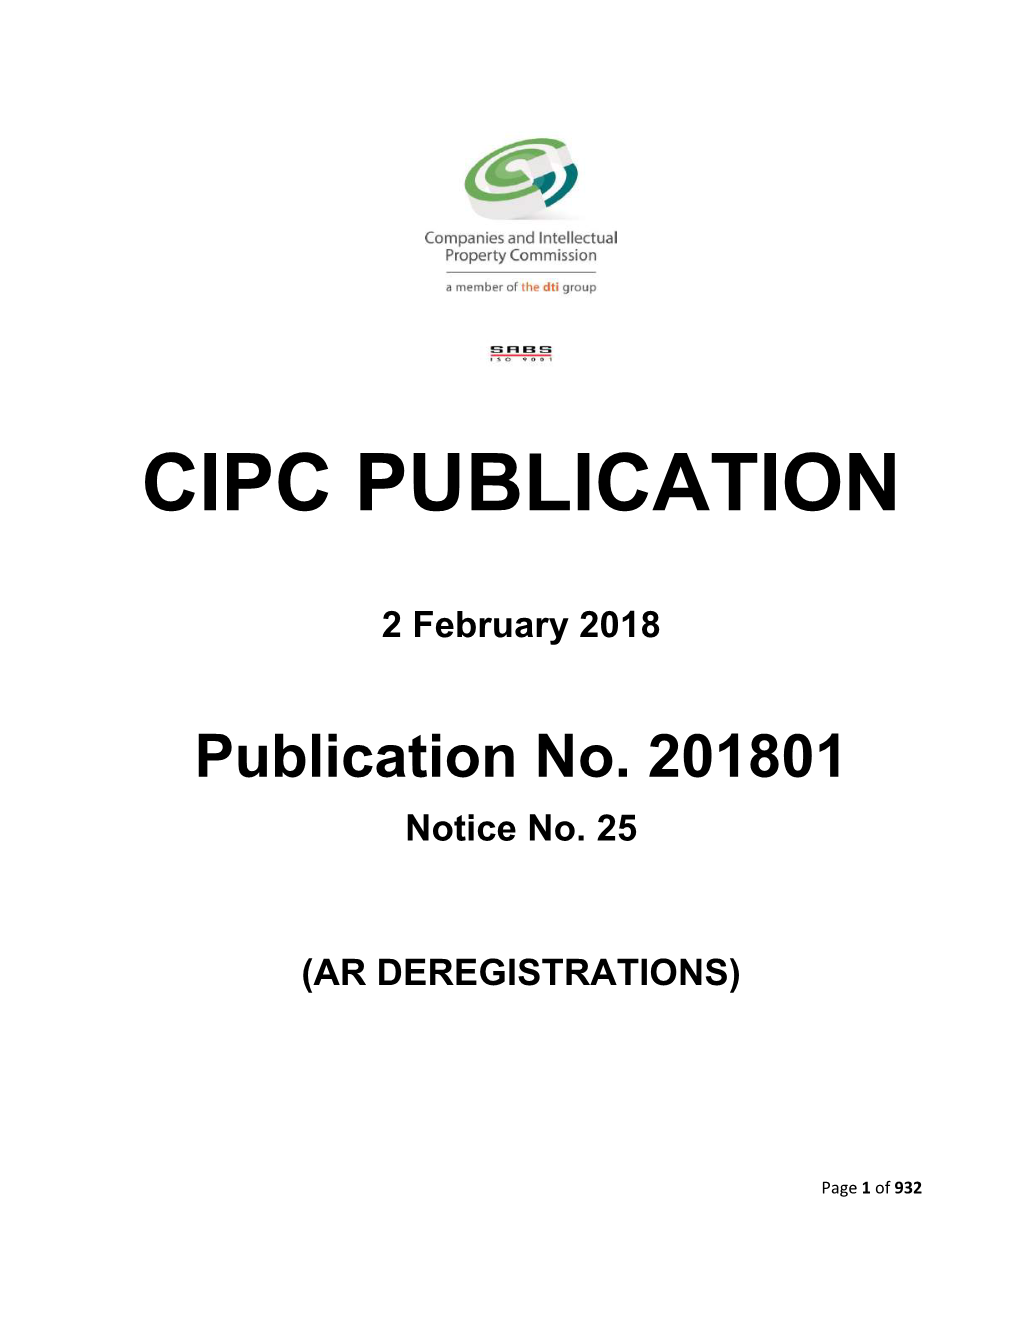 Publication No. 201801 Notice No